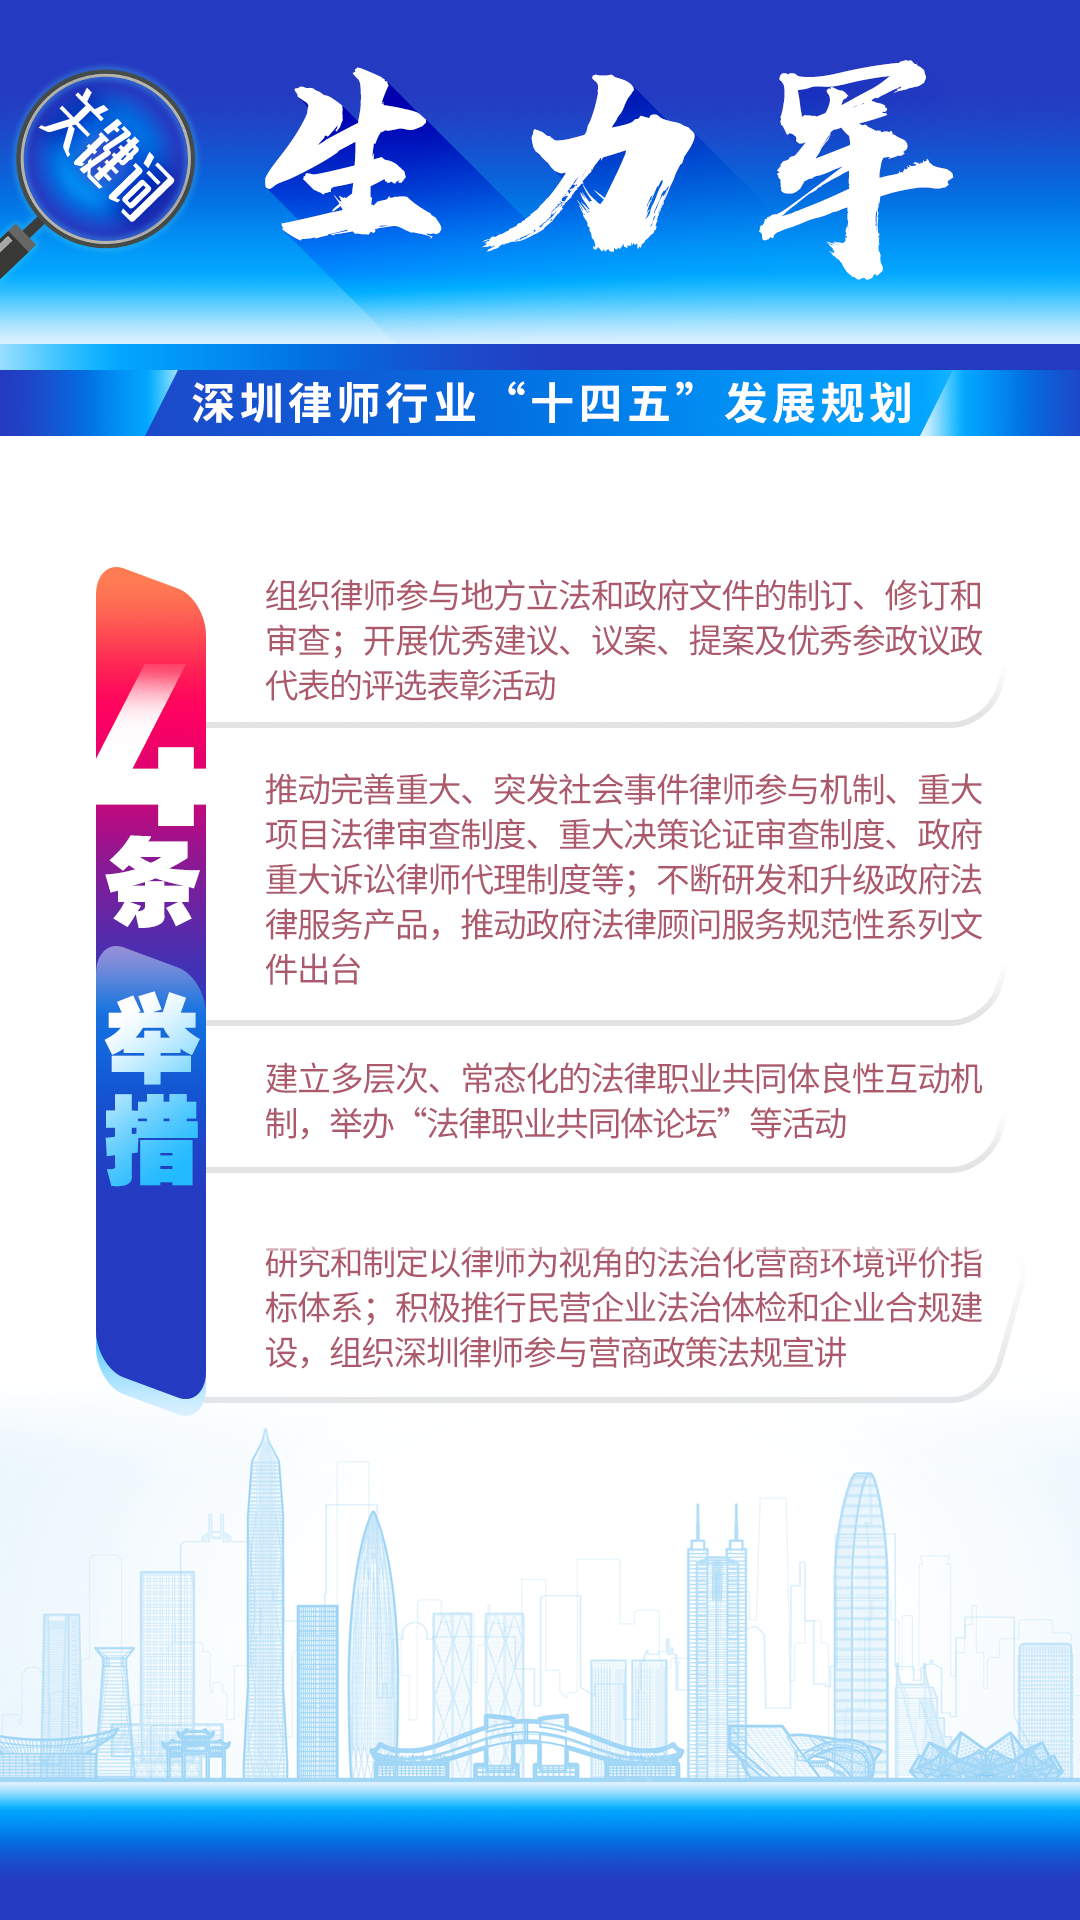 图解 | 深圳律师行业“十四五”发展规划（2021-2025）